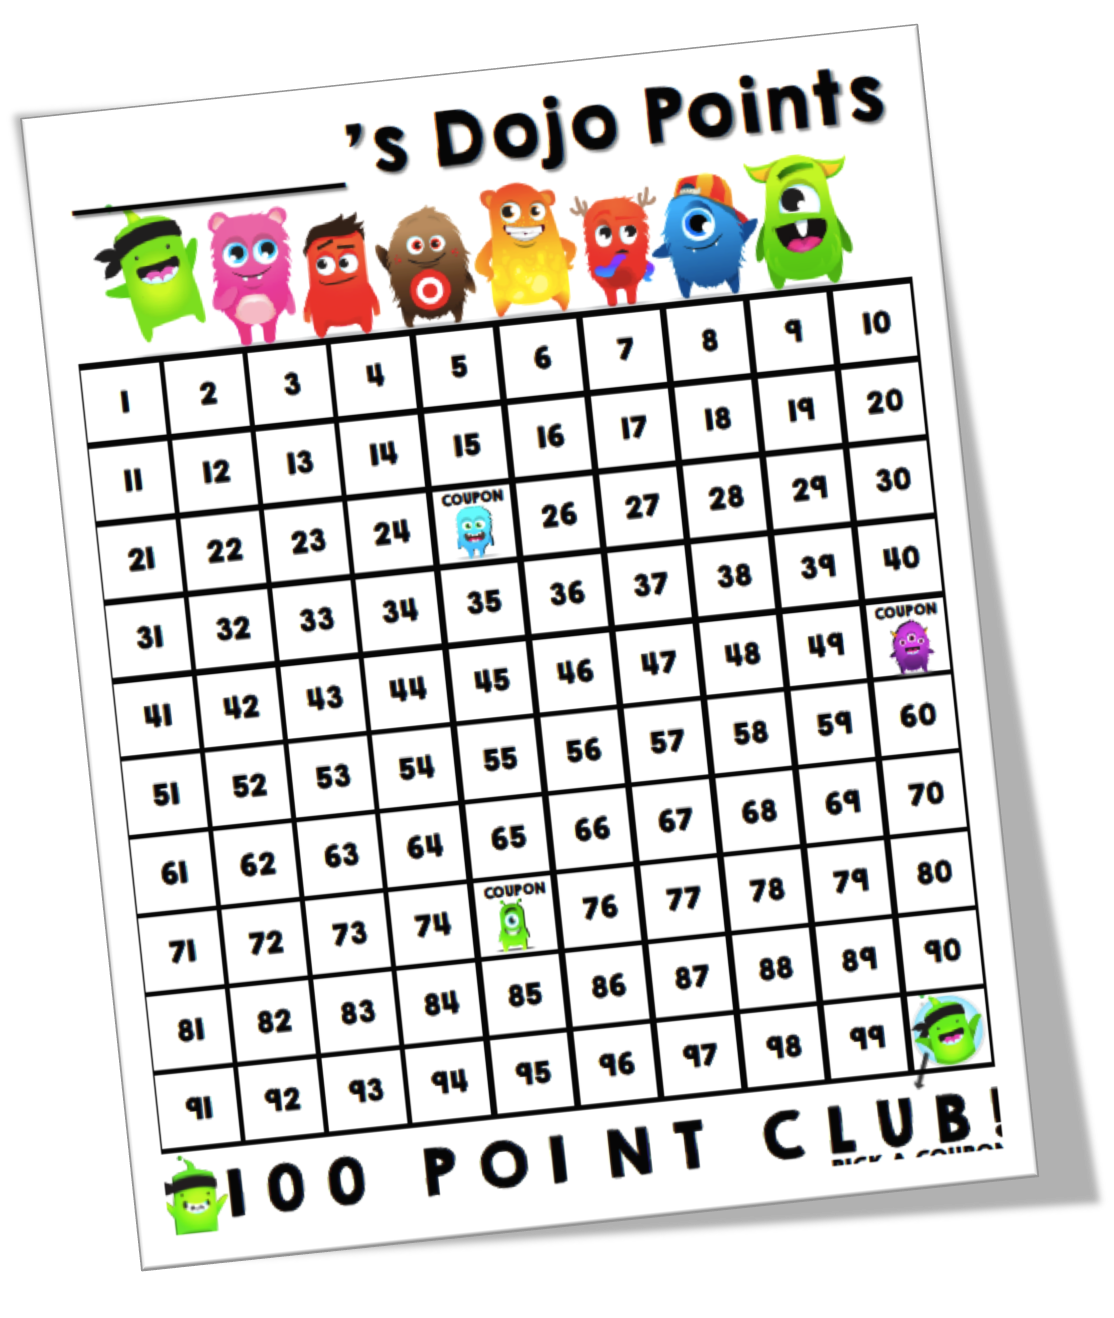 Class Dojo Chart